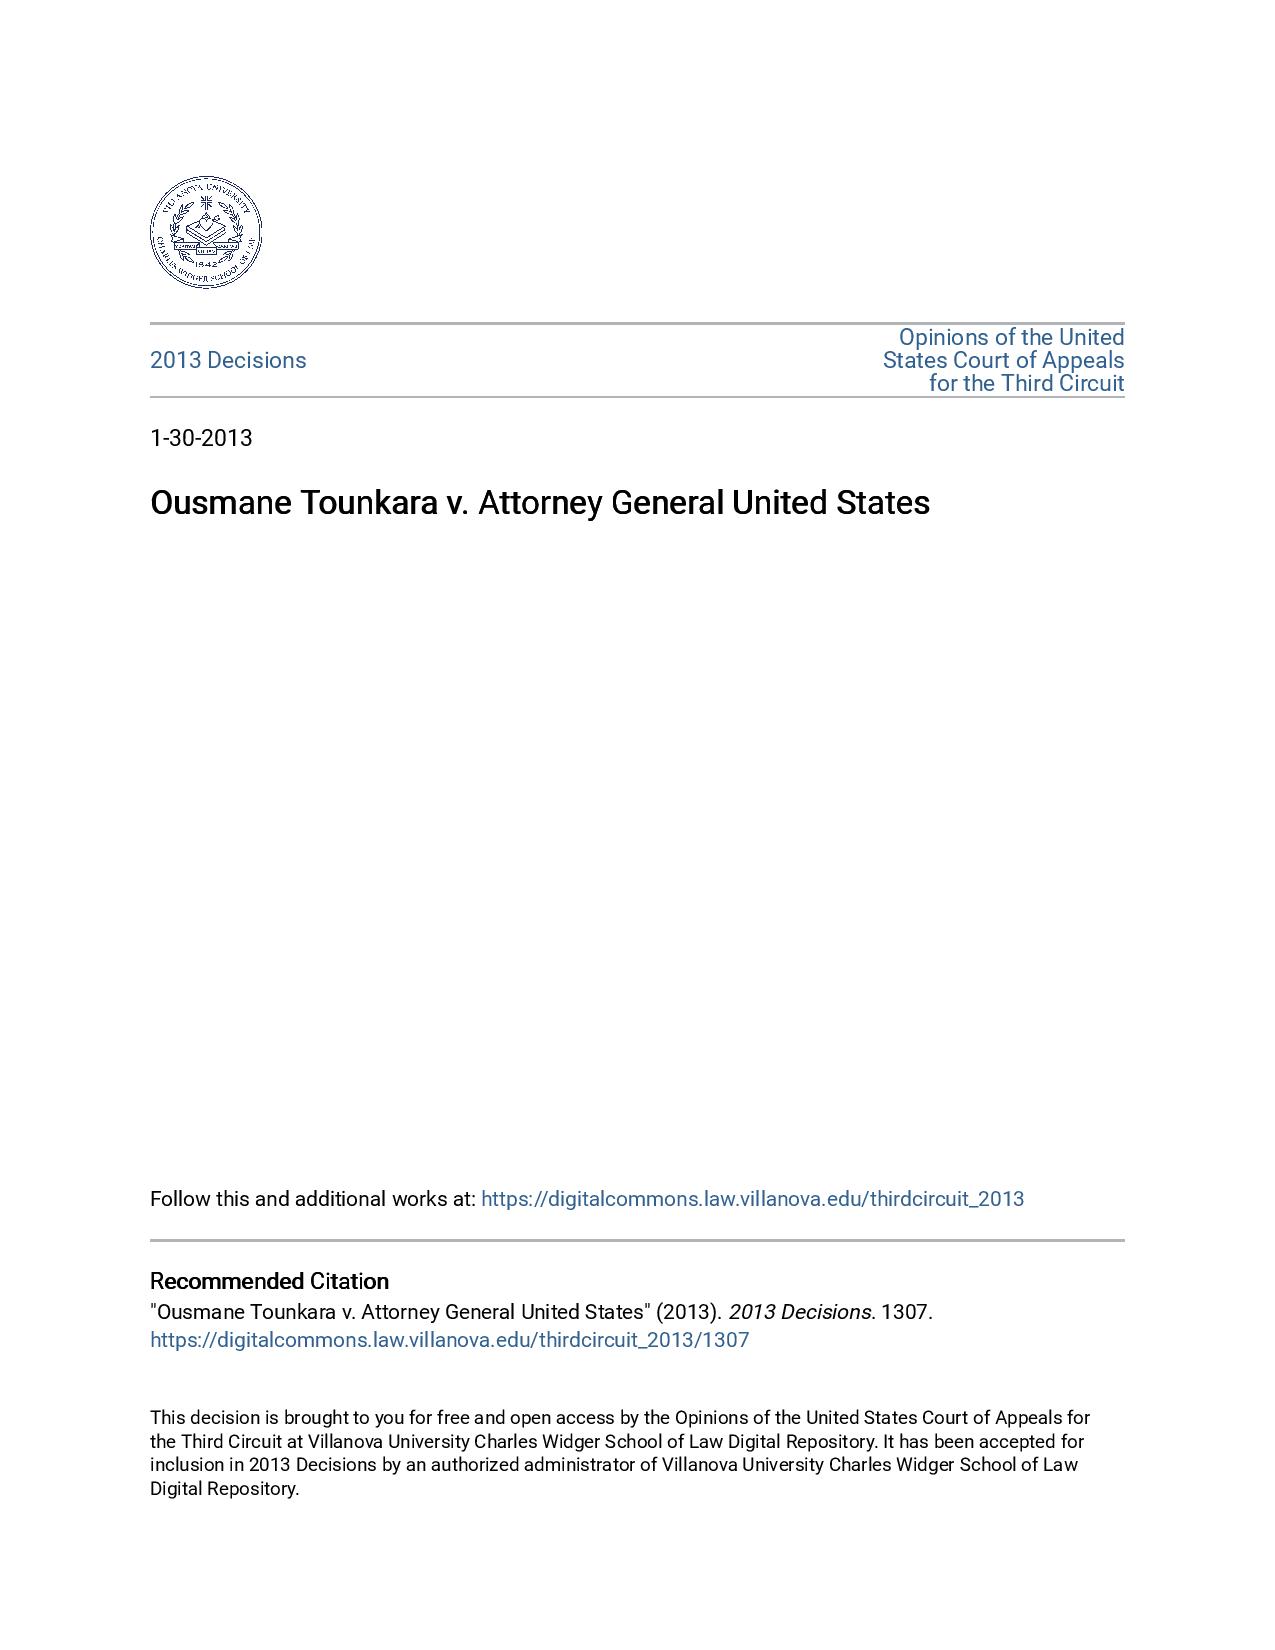 Document exclusif : Ousmane Tounkara est un demandeur d’asile guinéen !